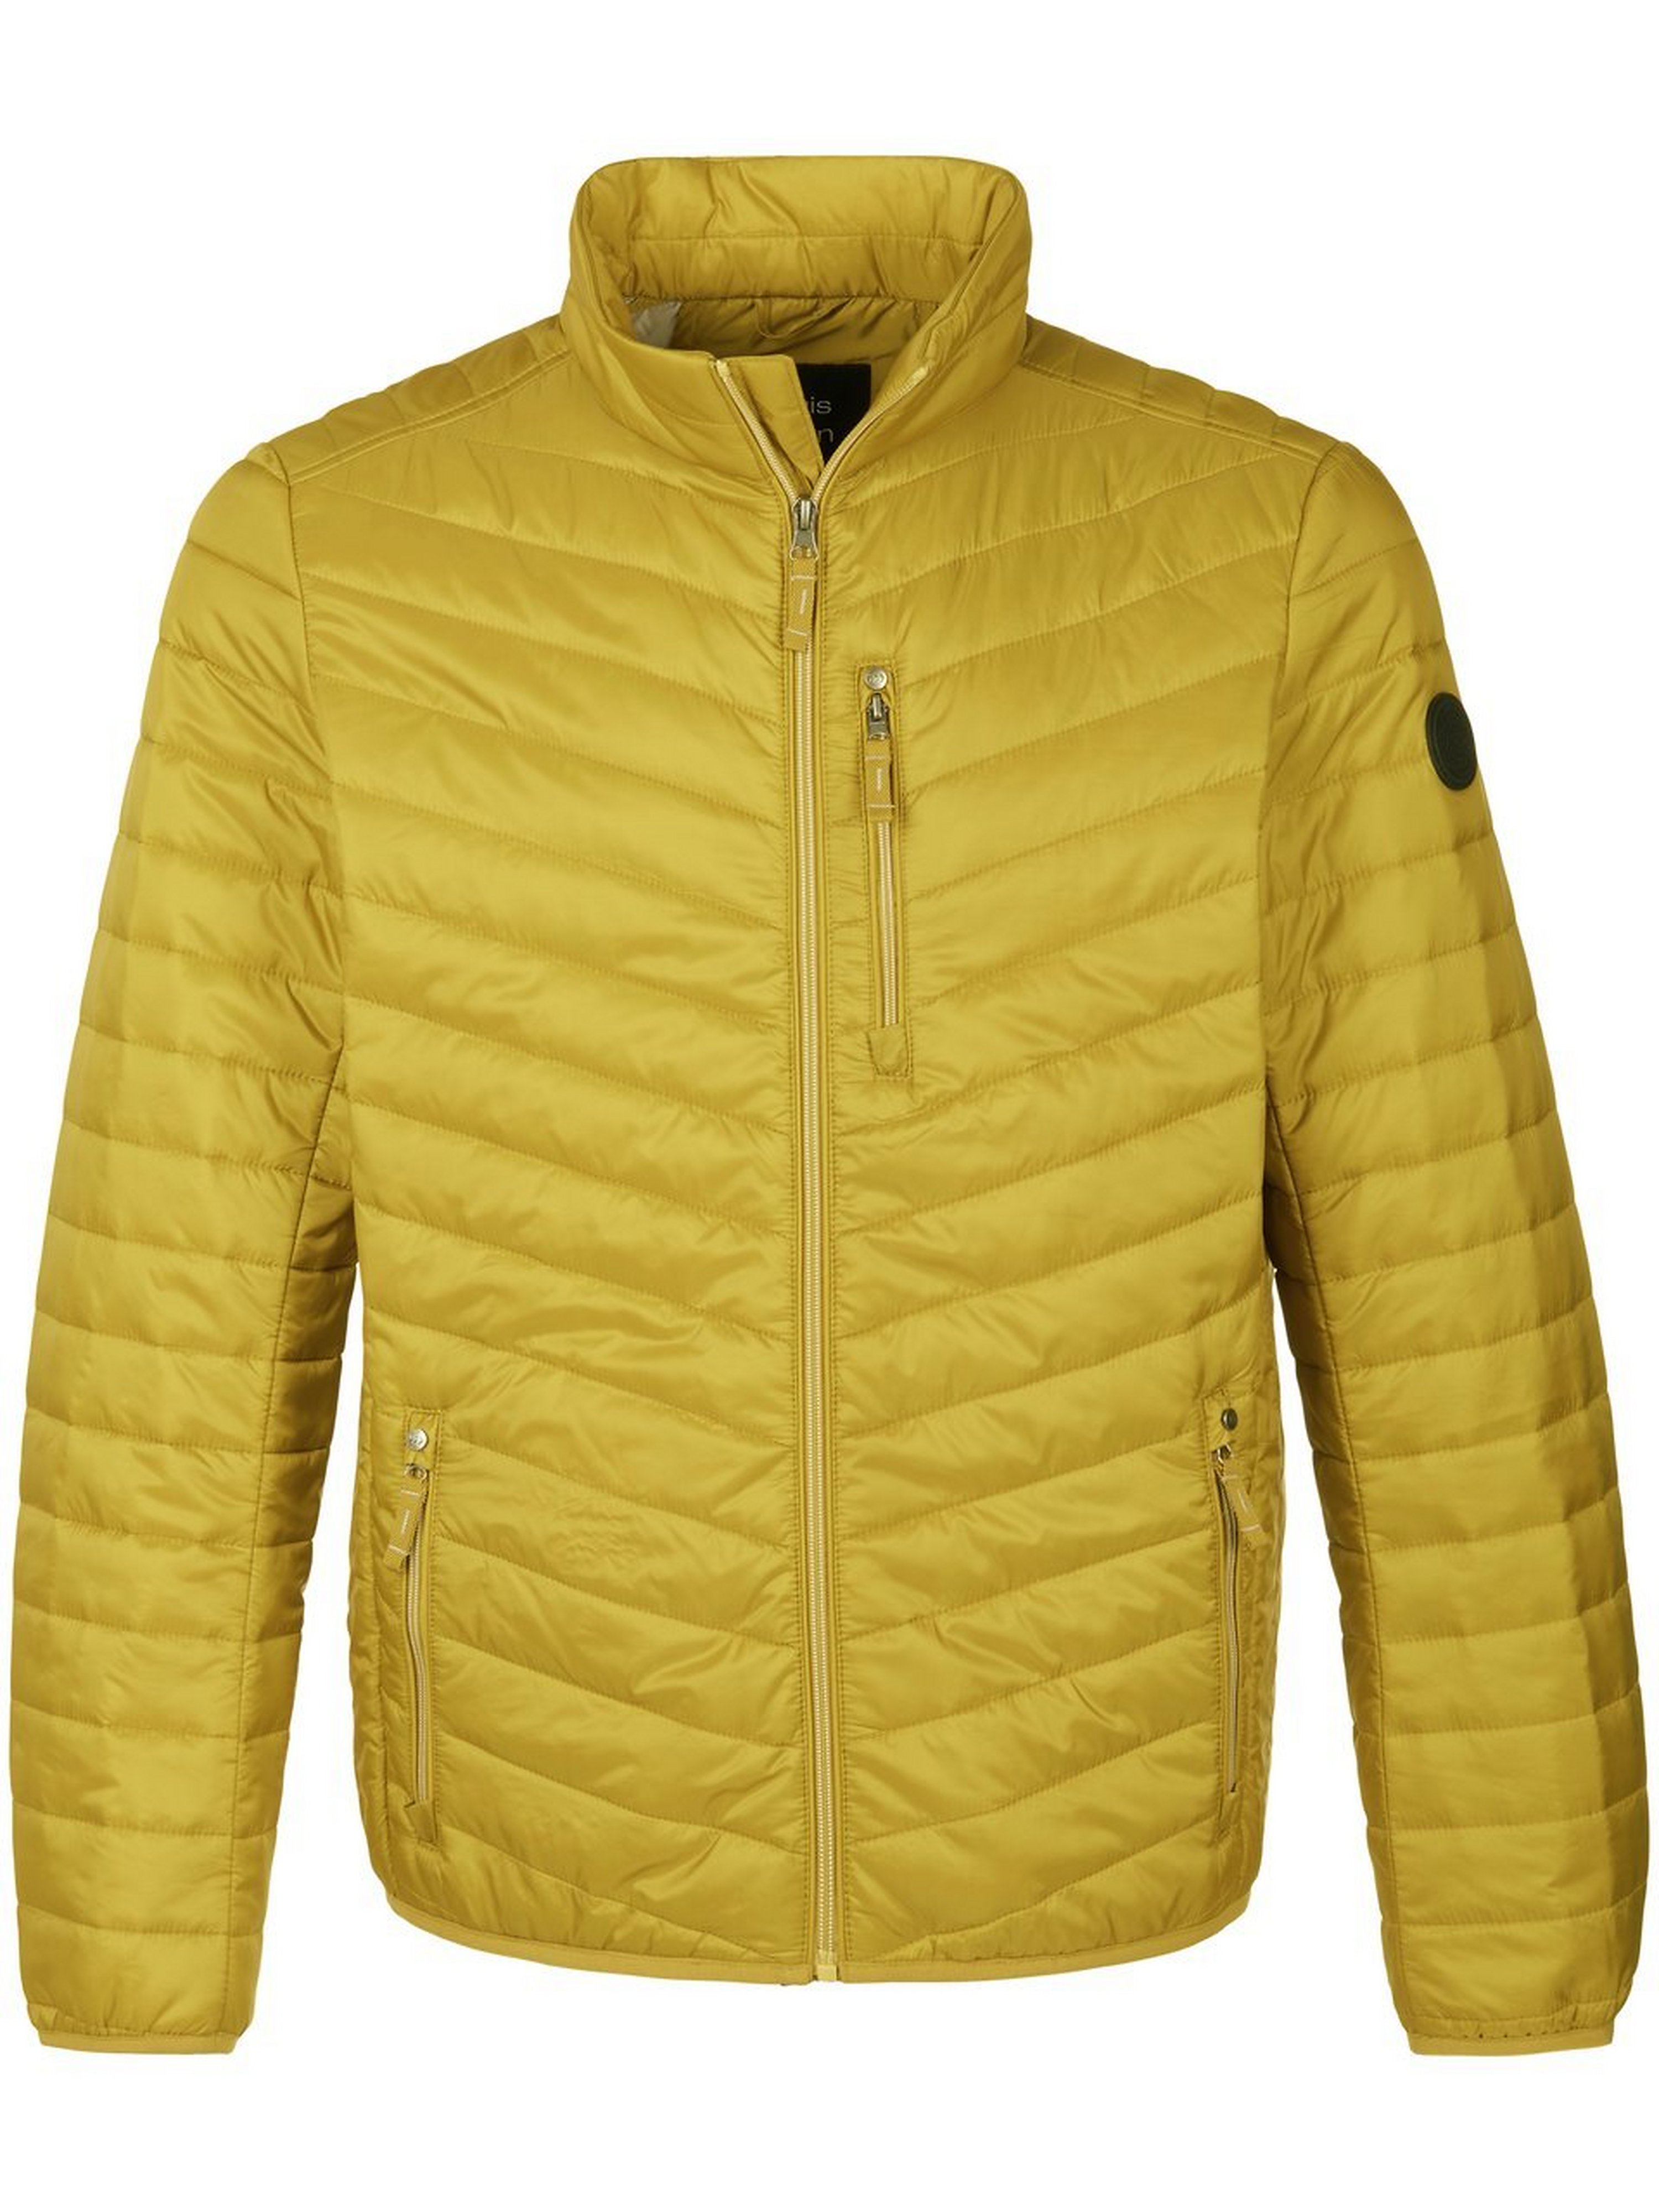 Windwerende en waterafstotende gewatteerde jas Van Louis Sayn geel